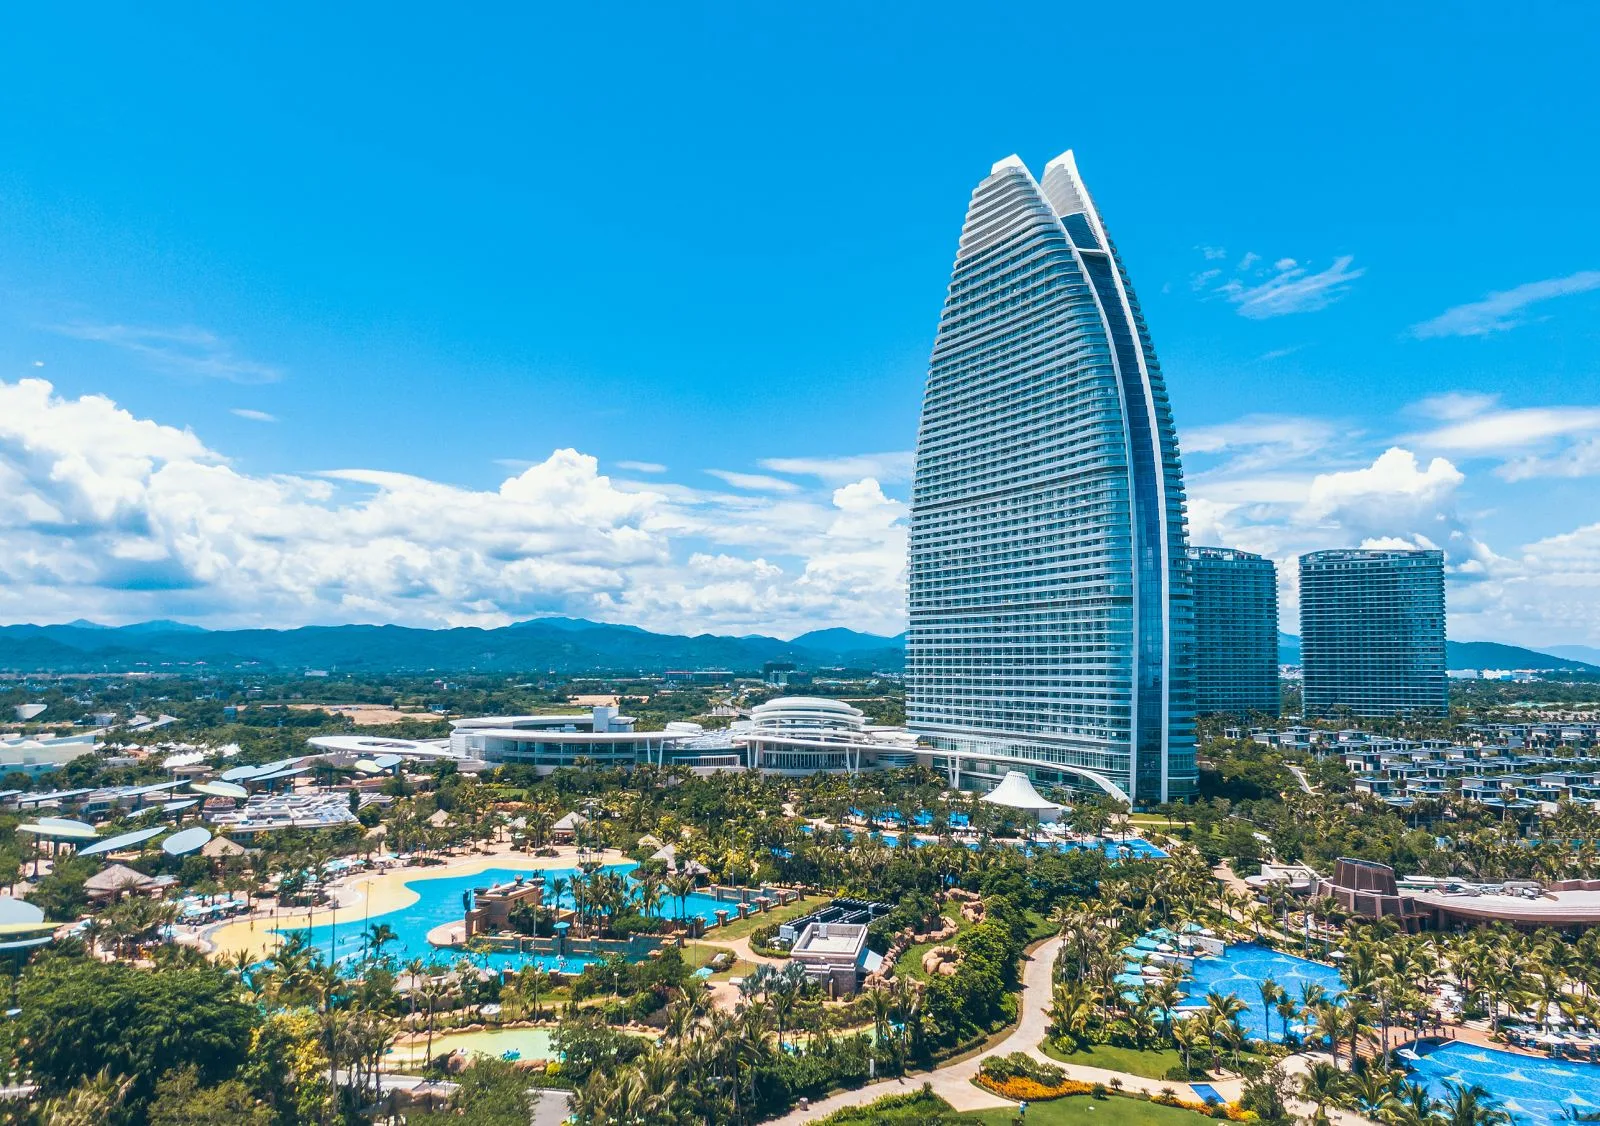 图片展示了一座现代化的高楼大厦，外形似帆船，旁边是热带风光的度假村和碧蓝的游泳池。